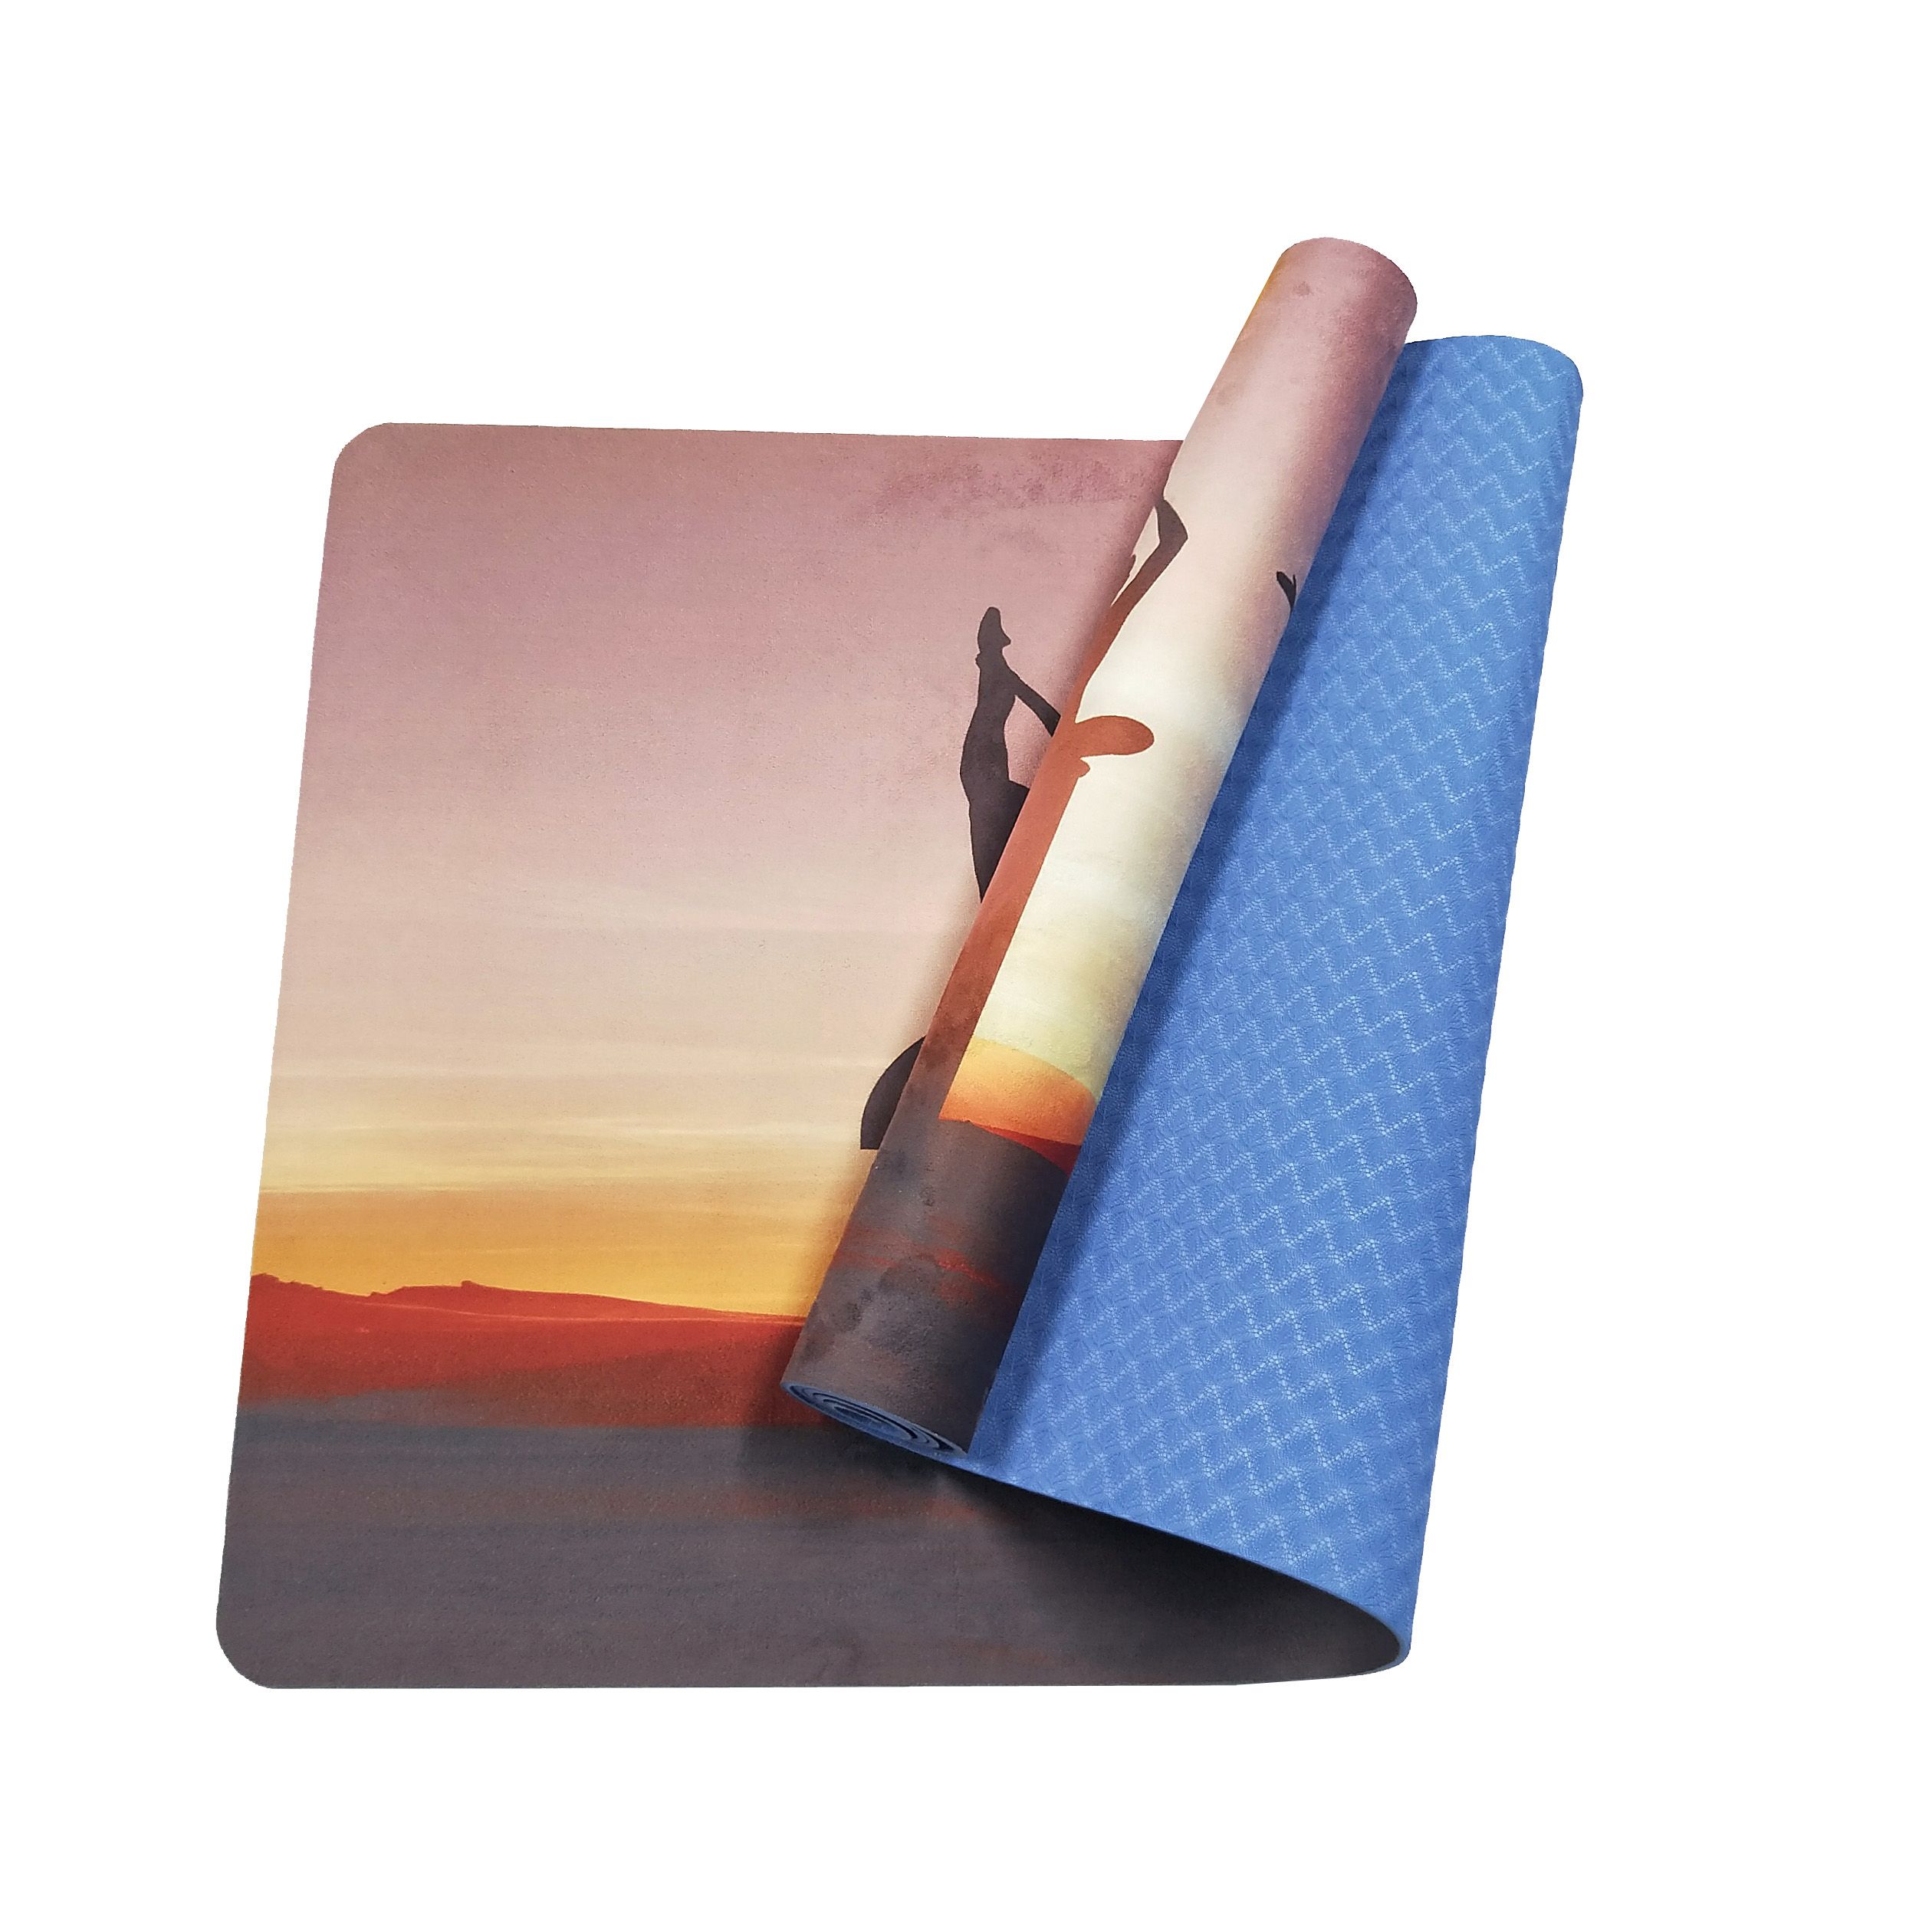 康美伽瑜伽垫厂家直销数码印刷瑜珈垫印花瑜伽垫麂皮绒垫环保防滑运动垫